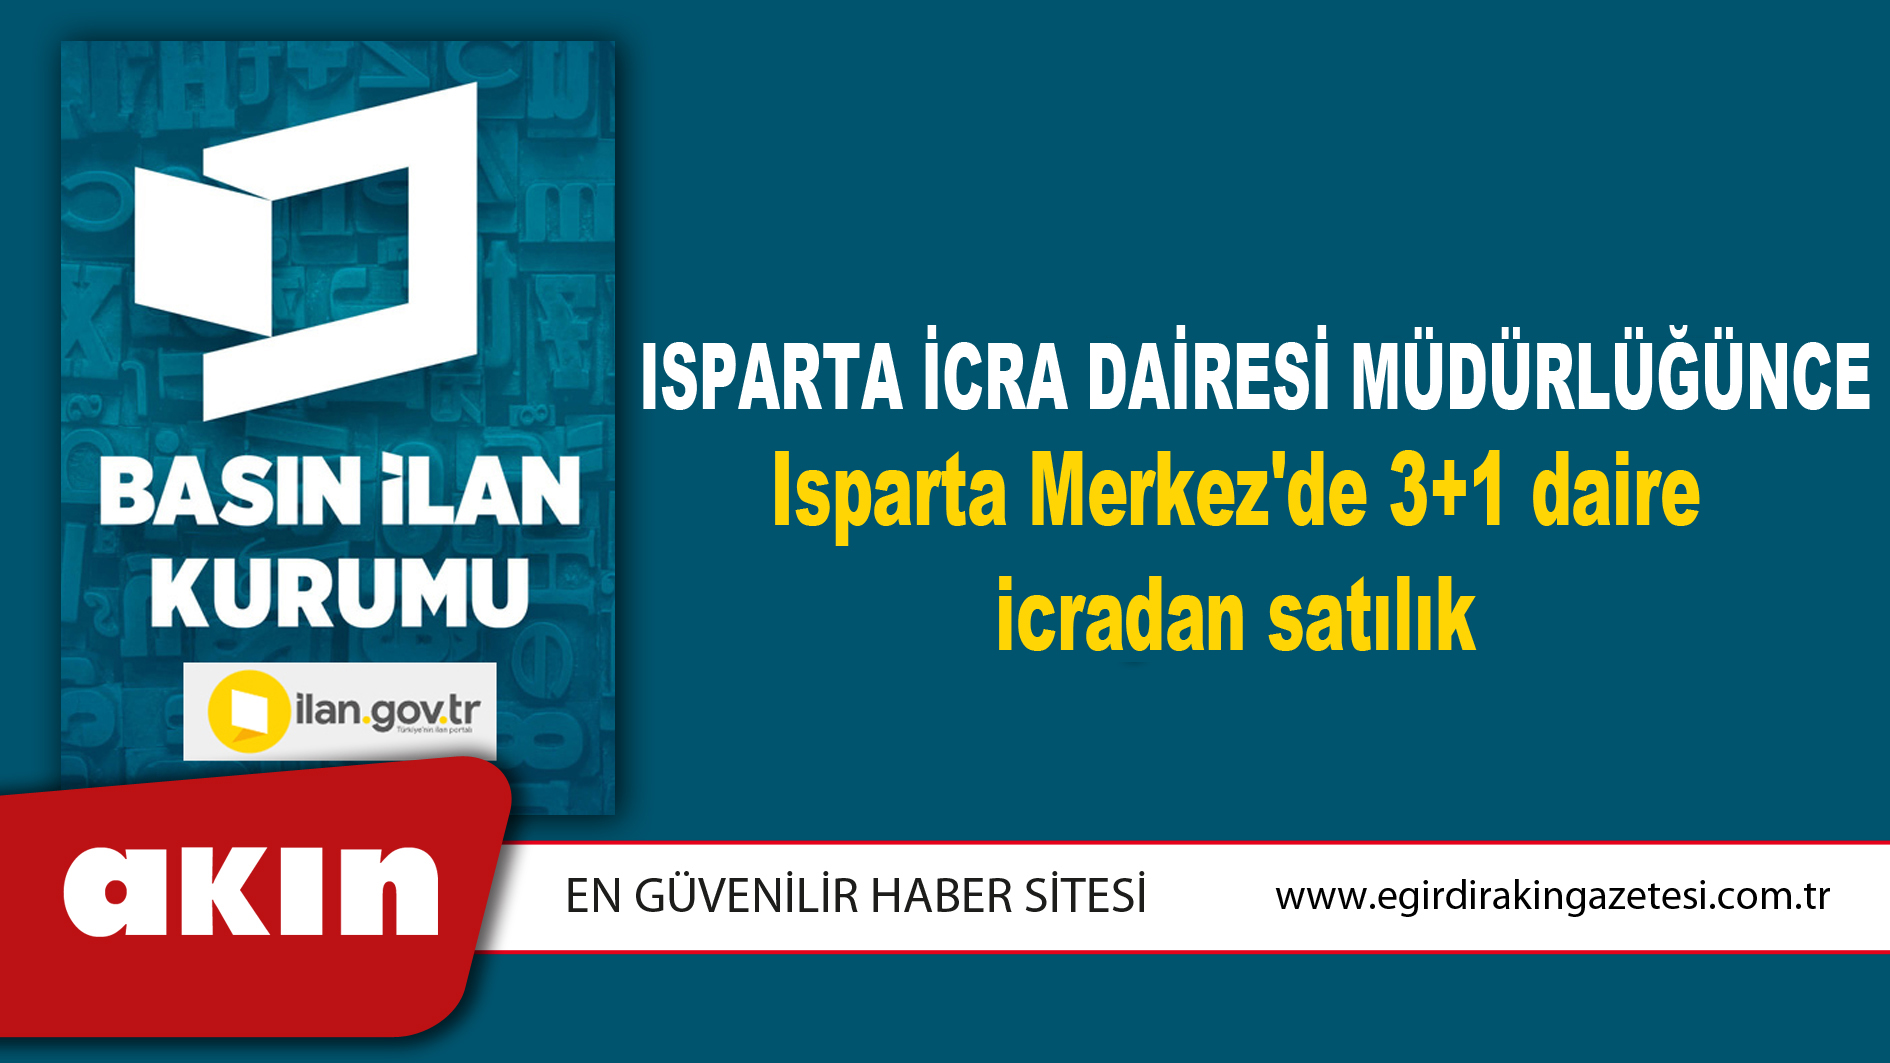 Isparta İcra Dairesi Müdürlüğünce Isparta Merkez'de 3+1 daire icradan satılık